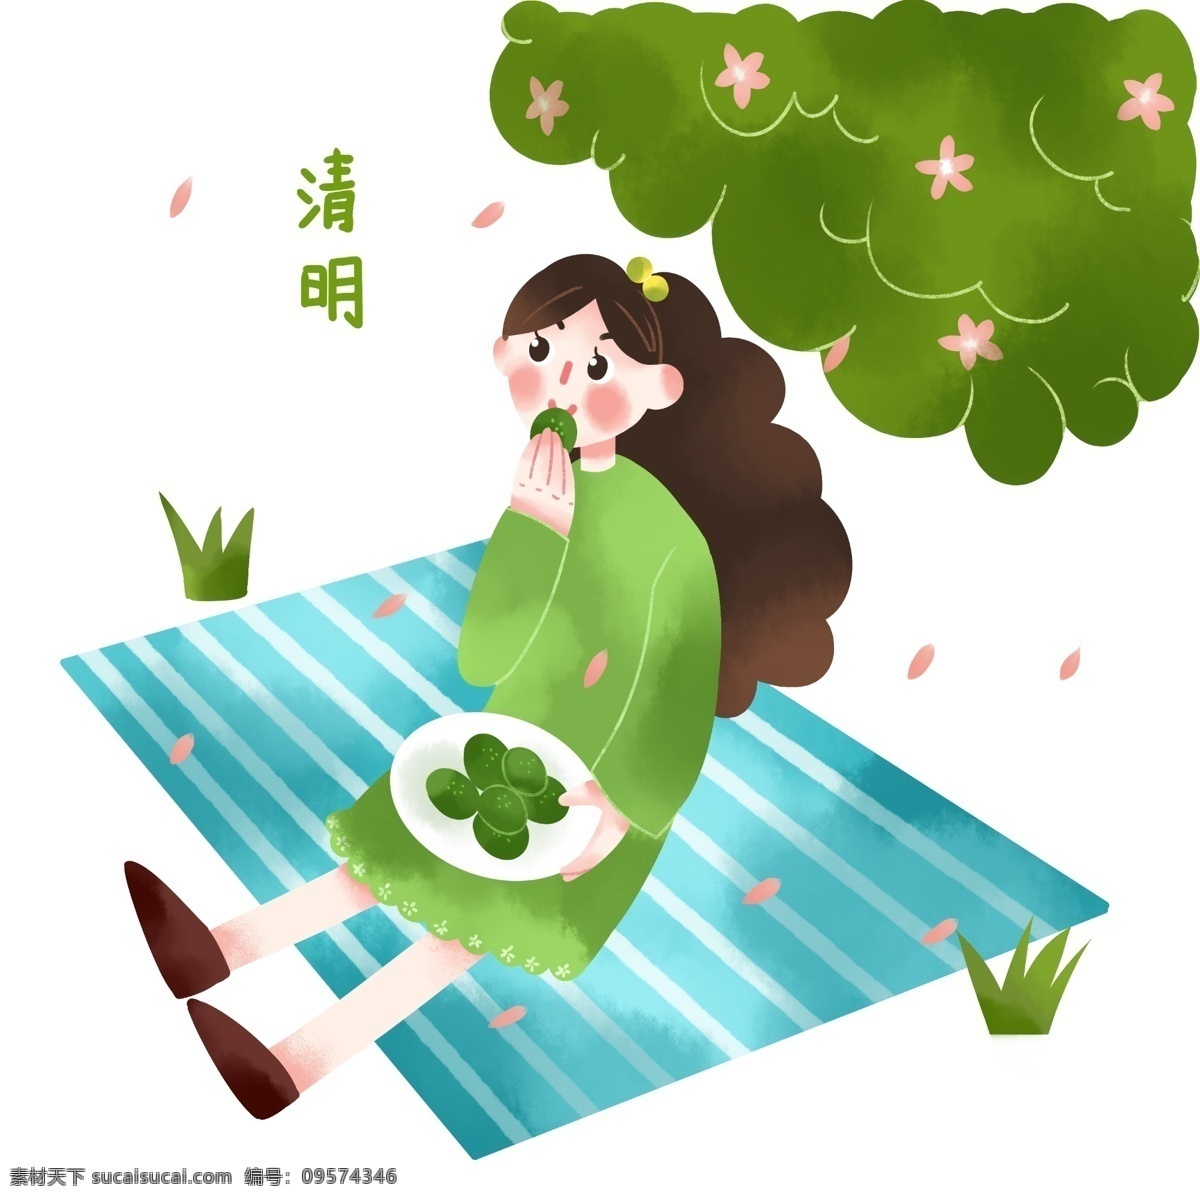 清明节 吃 东西 女孩 插画 吃东西的女孩 漂亮的女孩 绿色的大树 蓝色的地毯 卡通插画 清明节插画